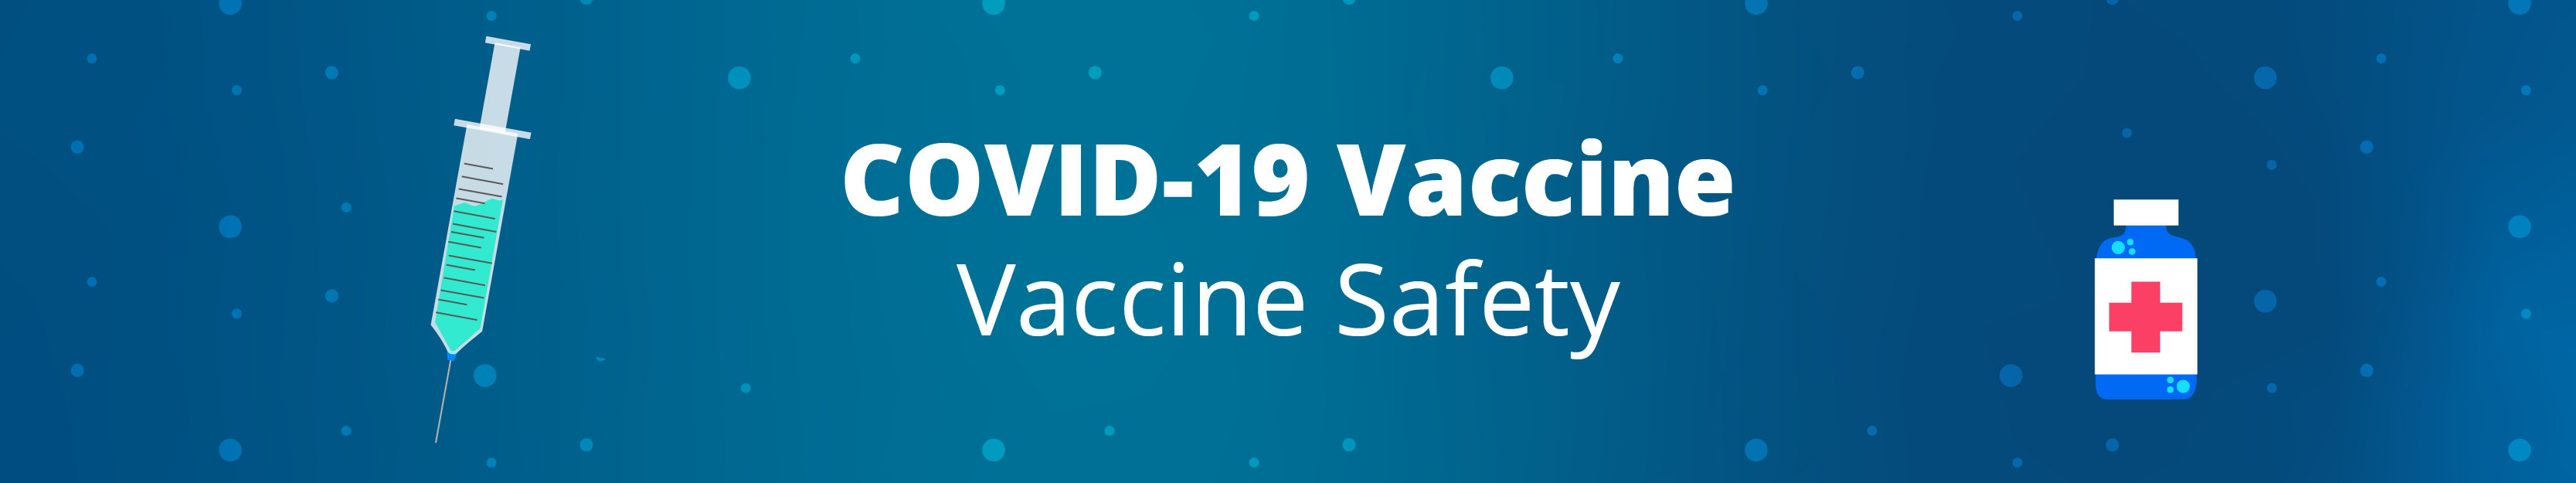 Vaccine-safety-05-1